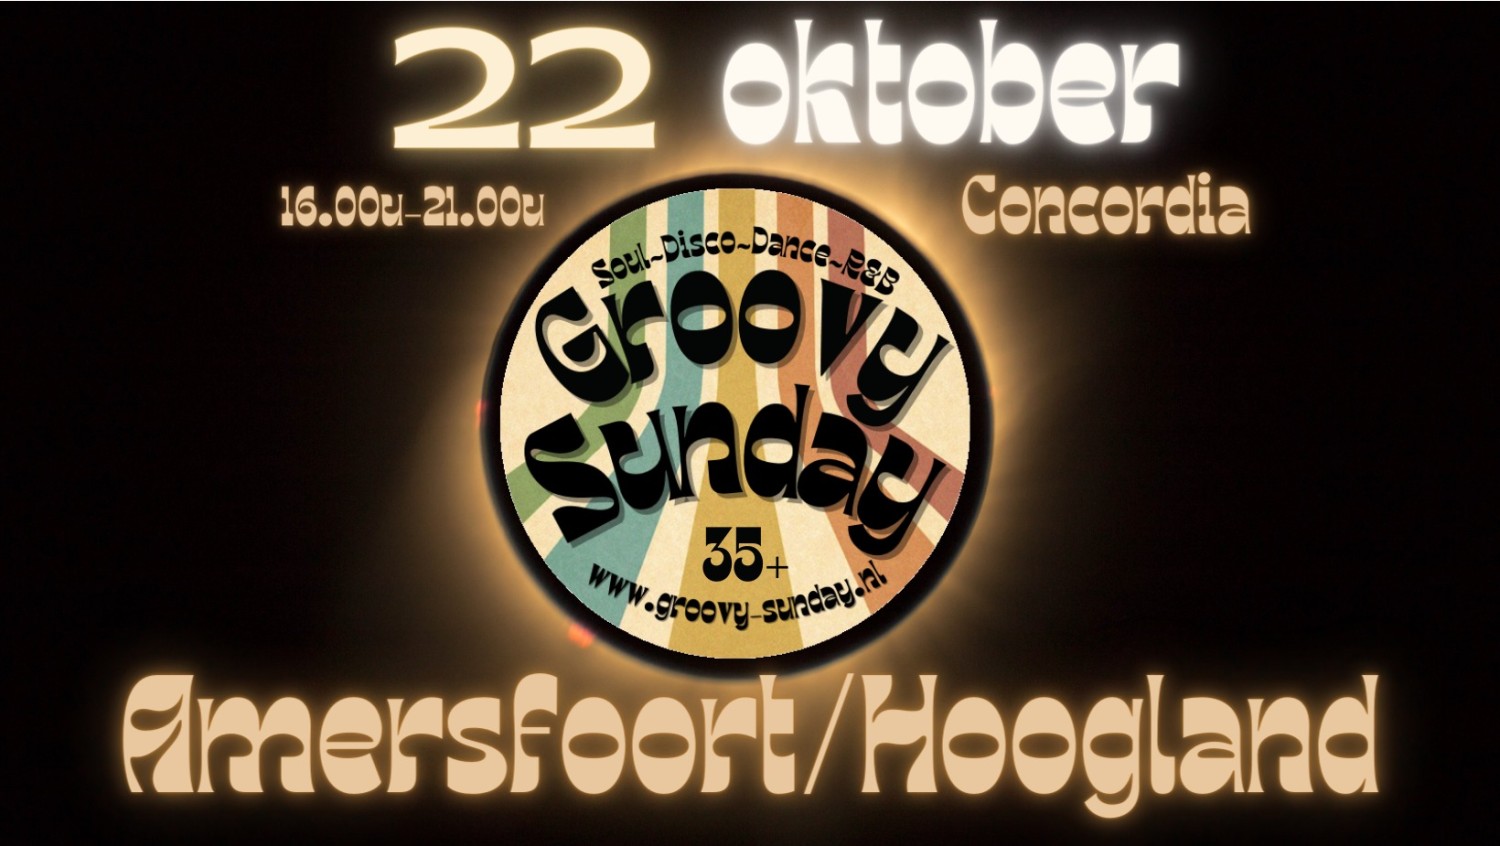 Groovy-Sunday Amersfoort